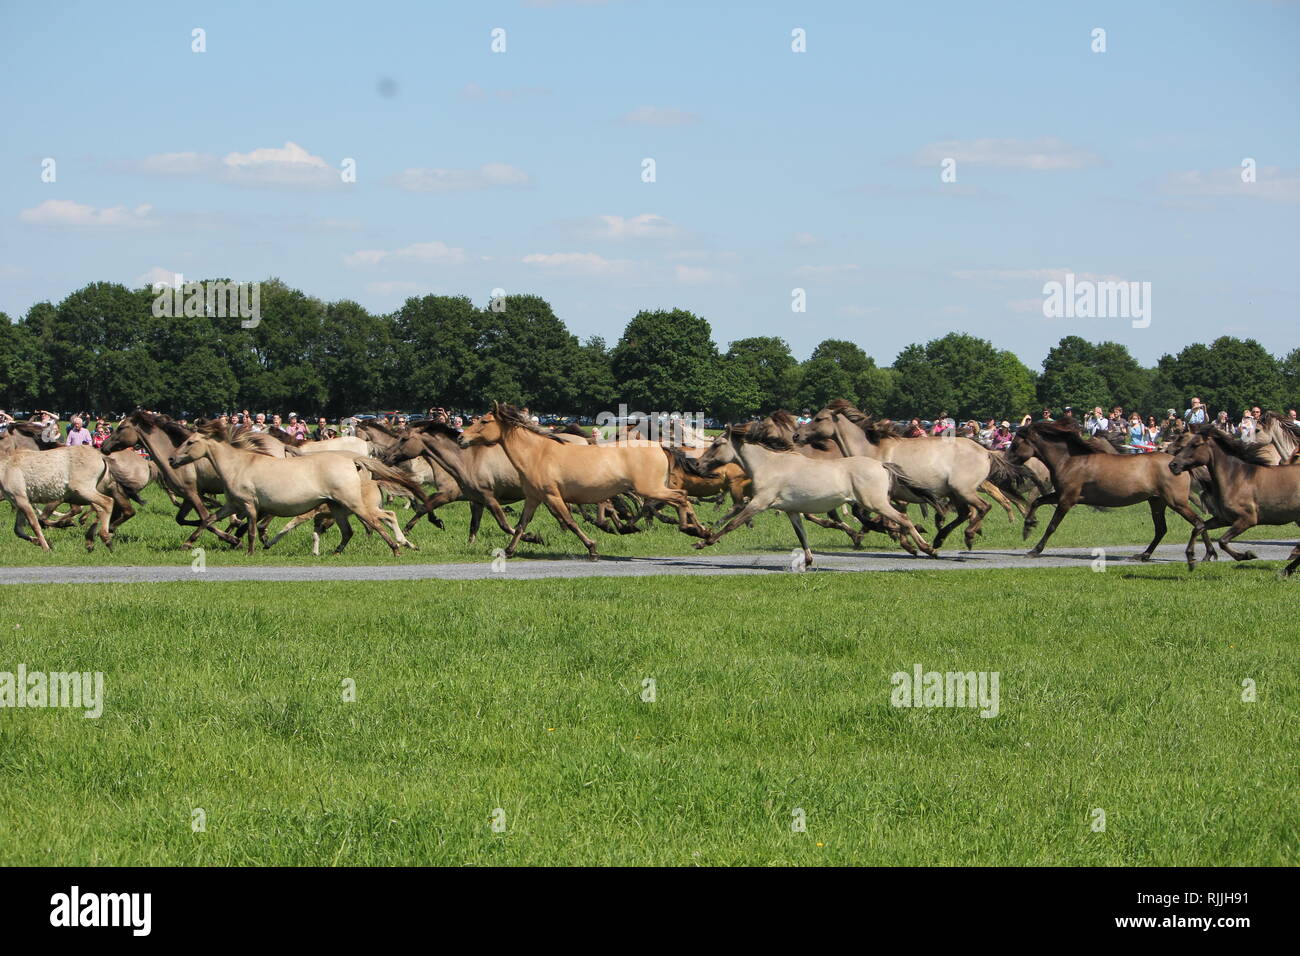 A herd of galopping 'Duelmener Wild Horses' near the Wildpferdebahn, Merfelder Bruch, Germany Stock Photo